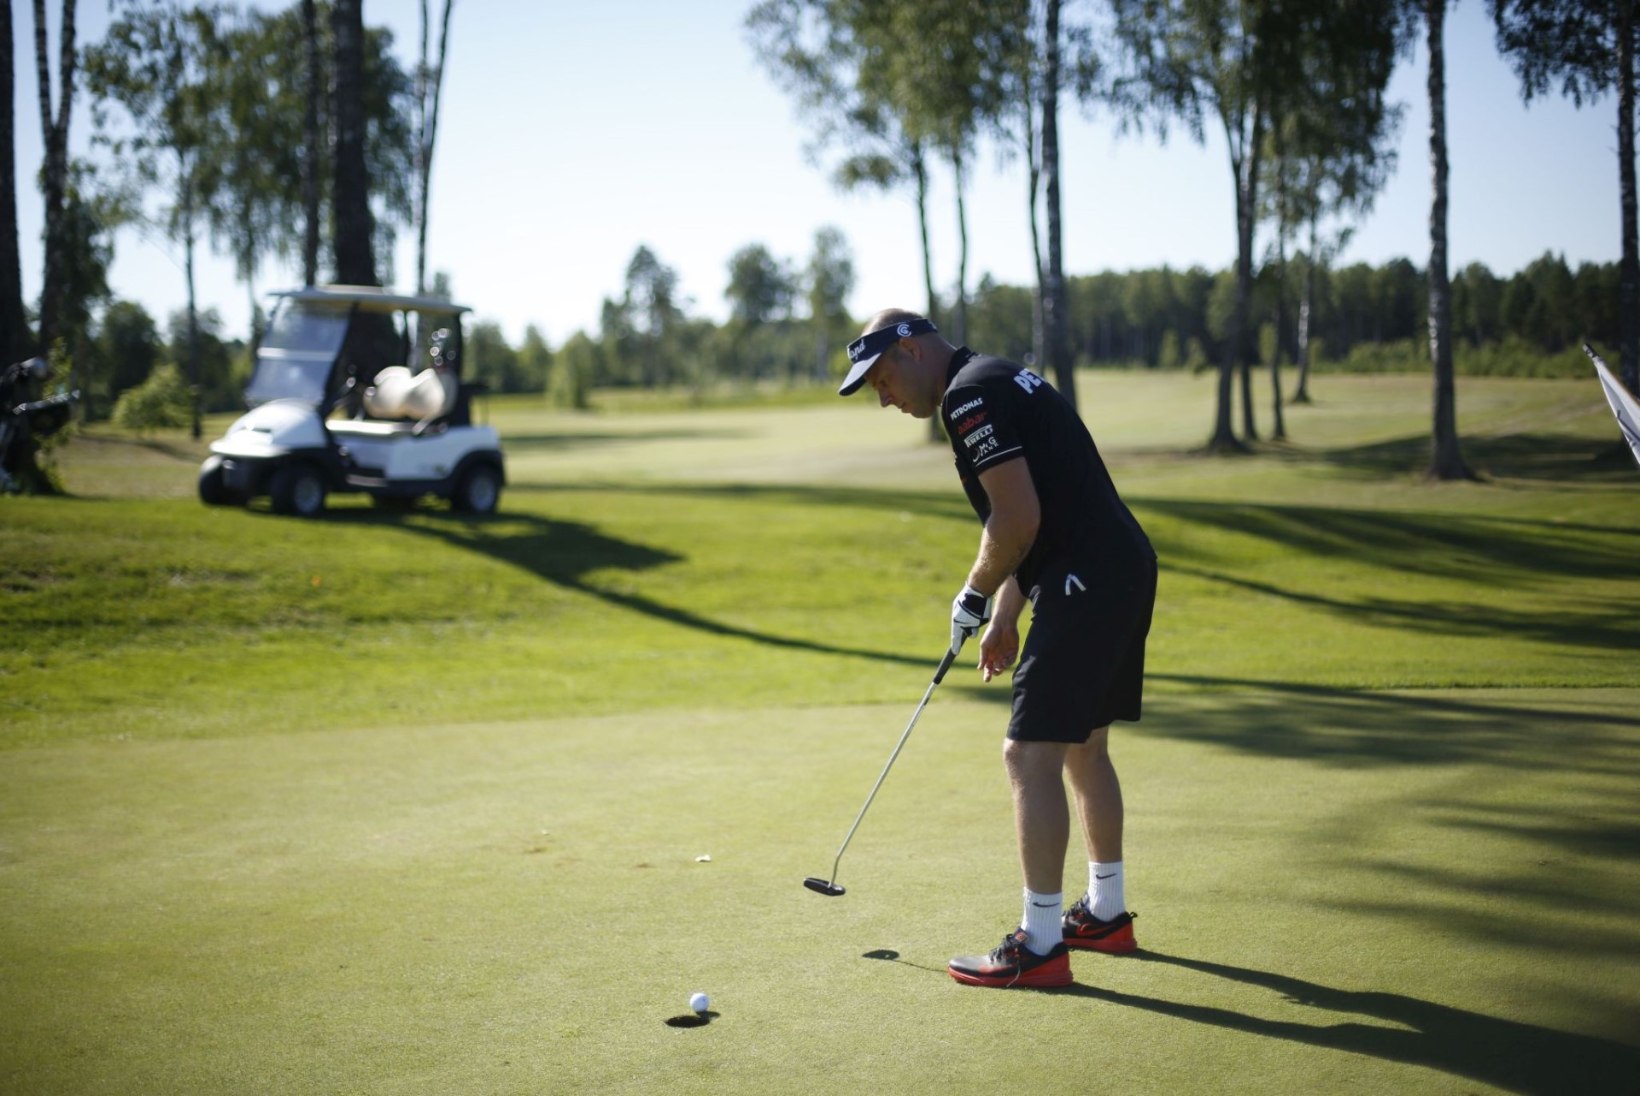 Staarjalgpallur Joel Lindpere korraldab omanimelise golfivõistluse 